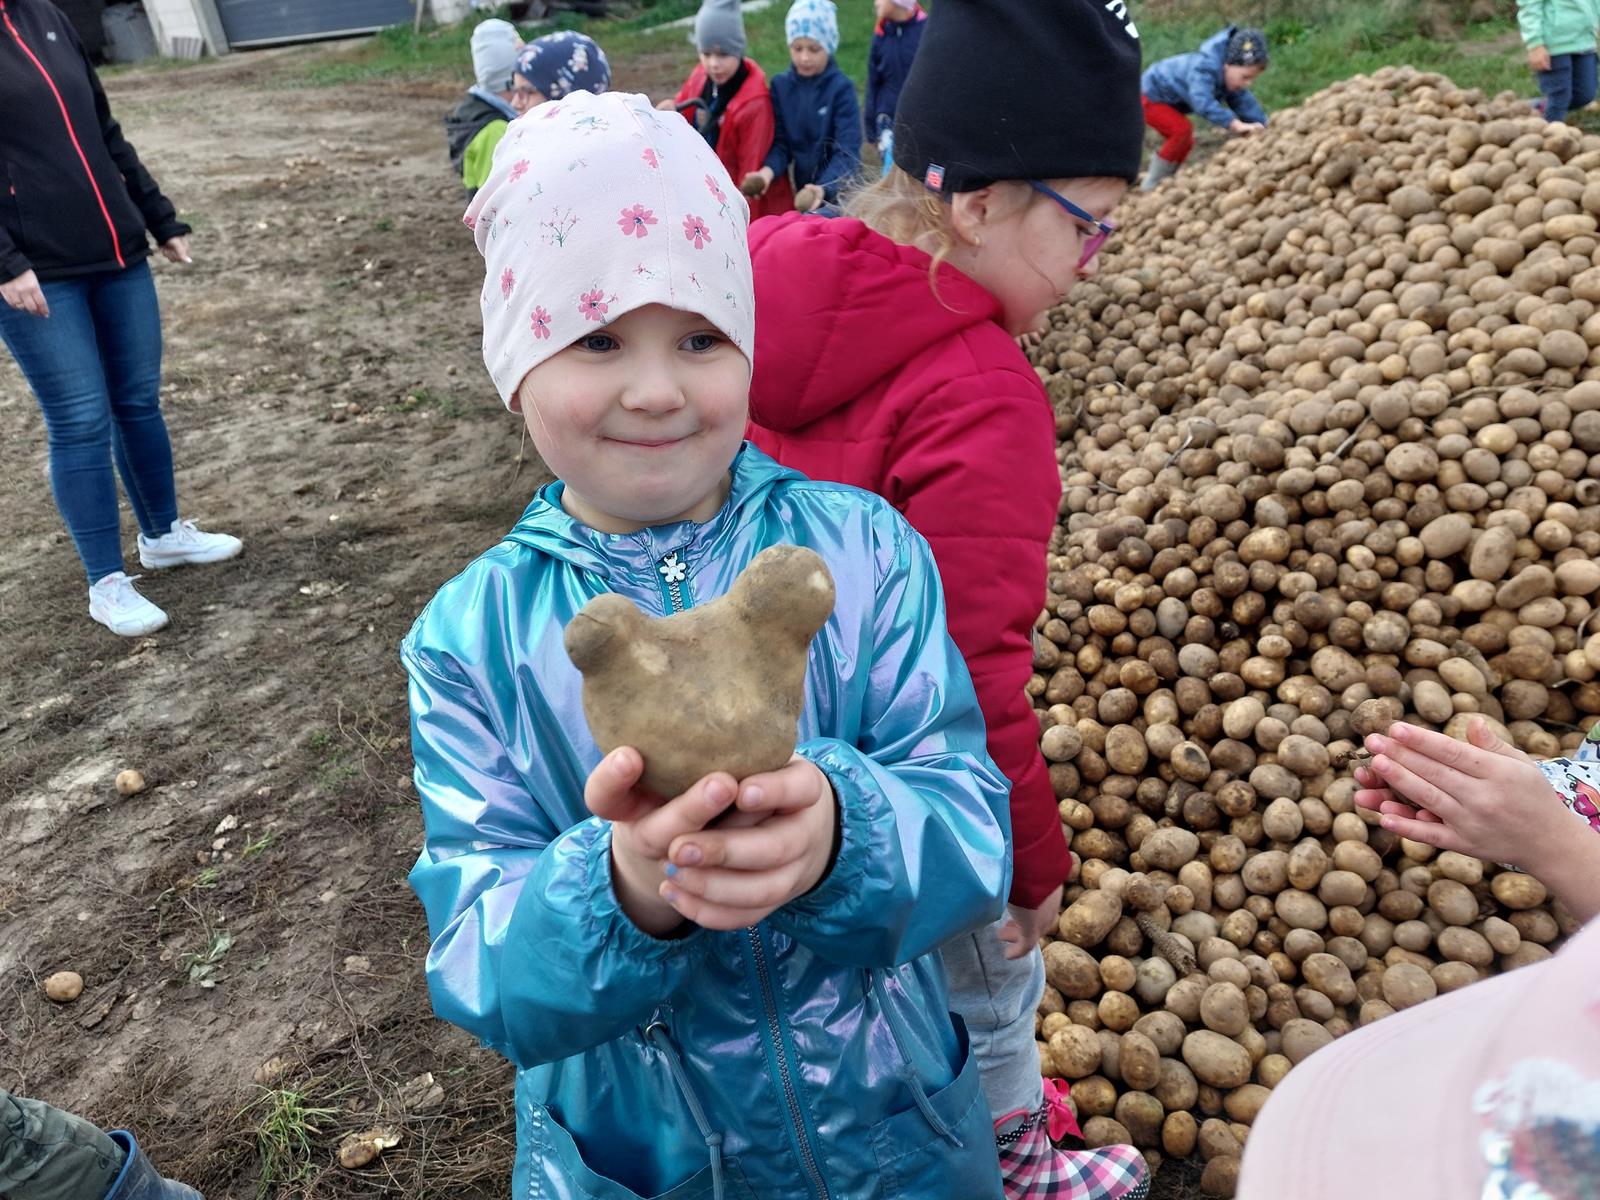 Dziewczynka trzyma w rękach ziemniaki o dziwnym kształcie.